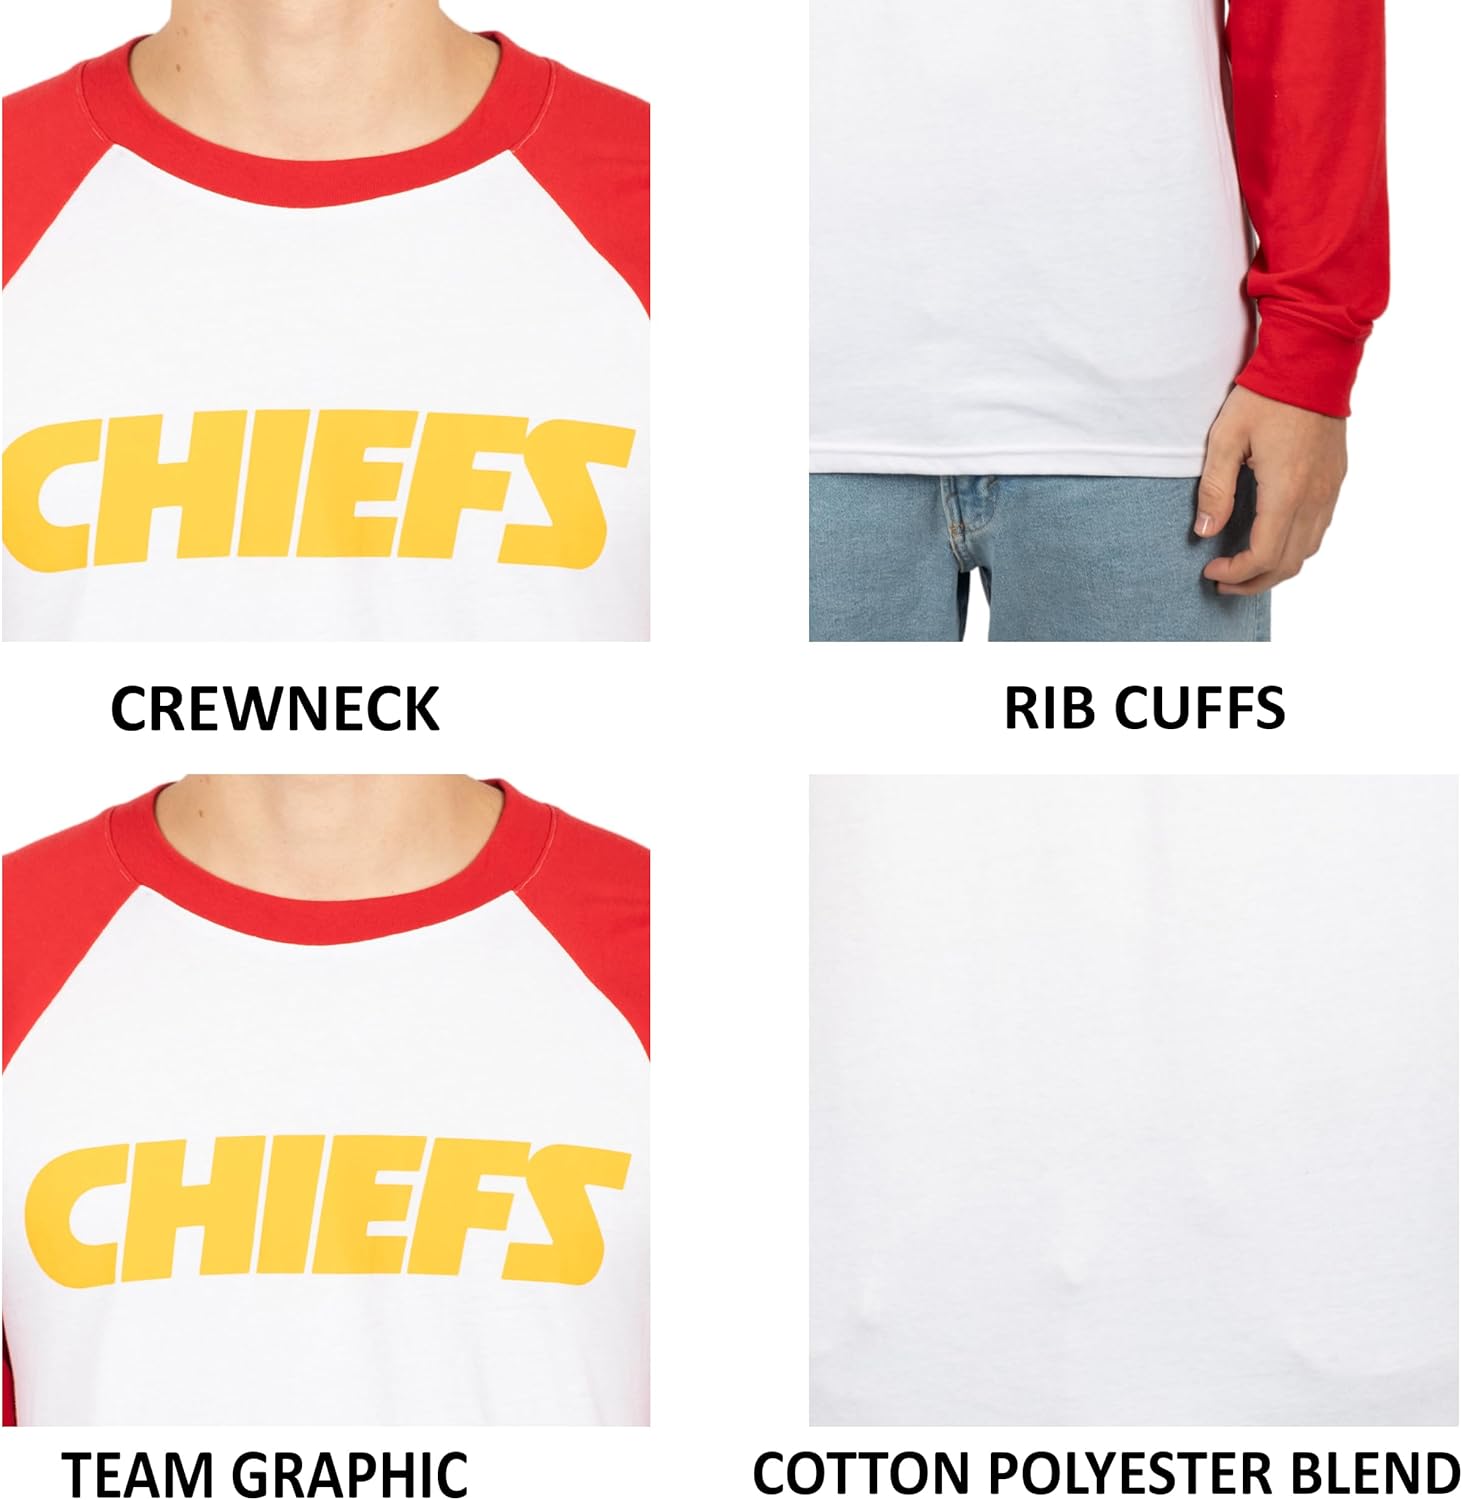 Ultra Game NFL Mens Super Soft Raglan Baseball Long Sleeve T-Shirt| Kansas City Chiefs